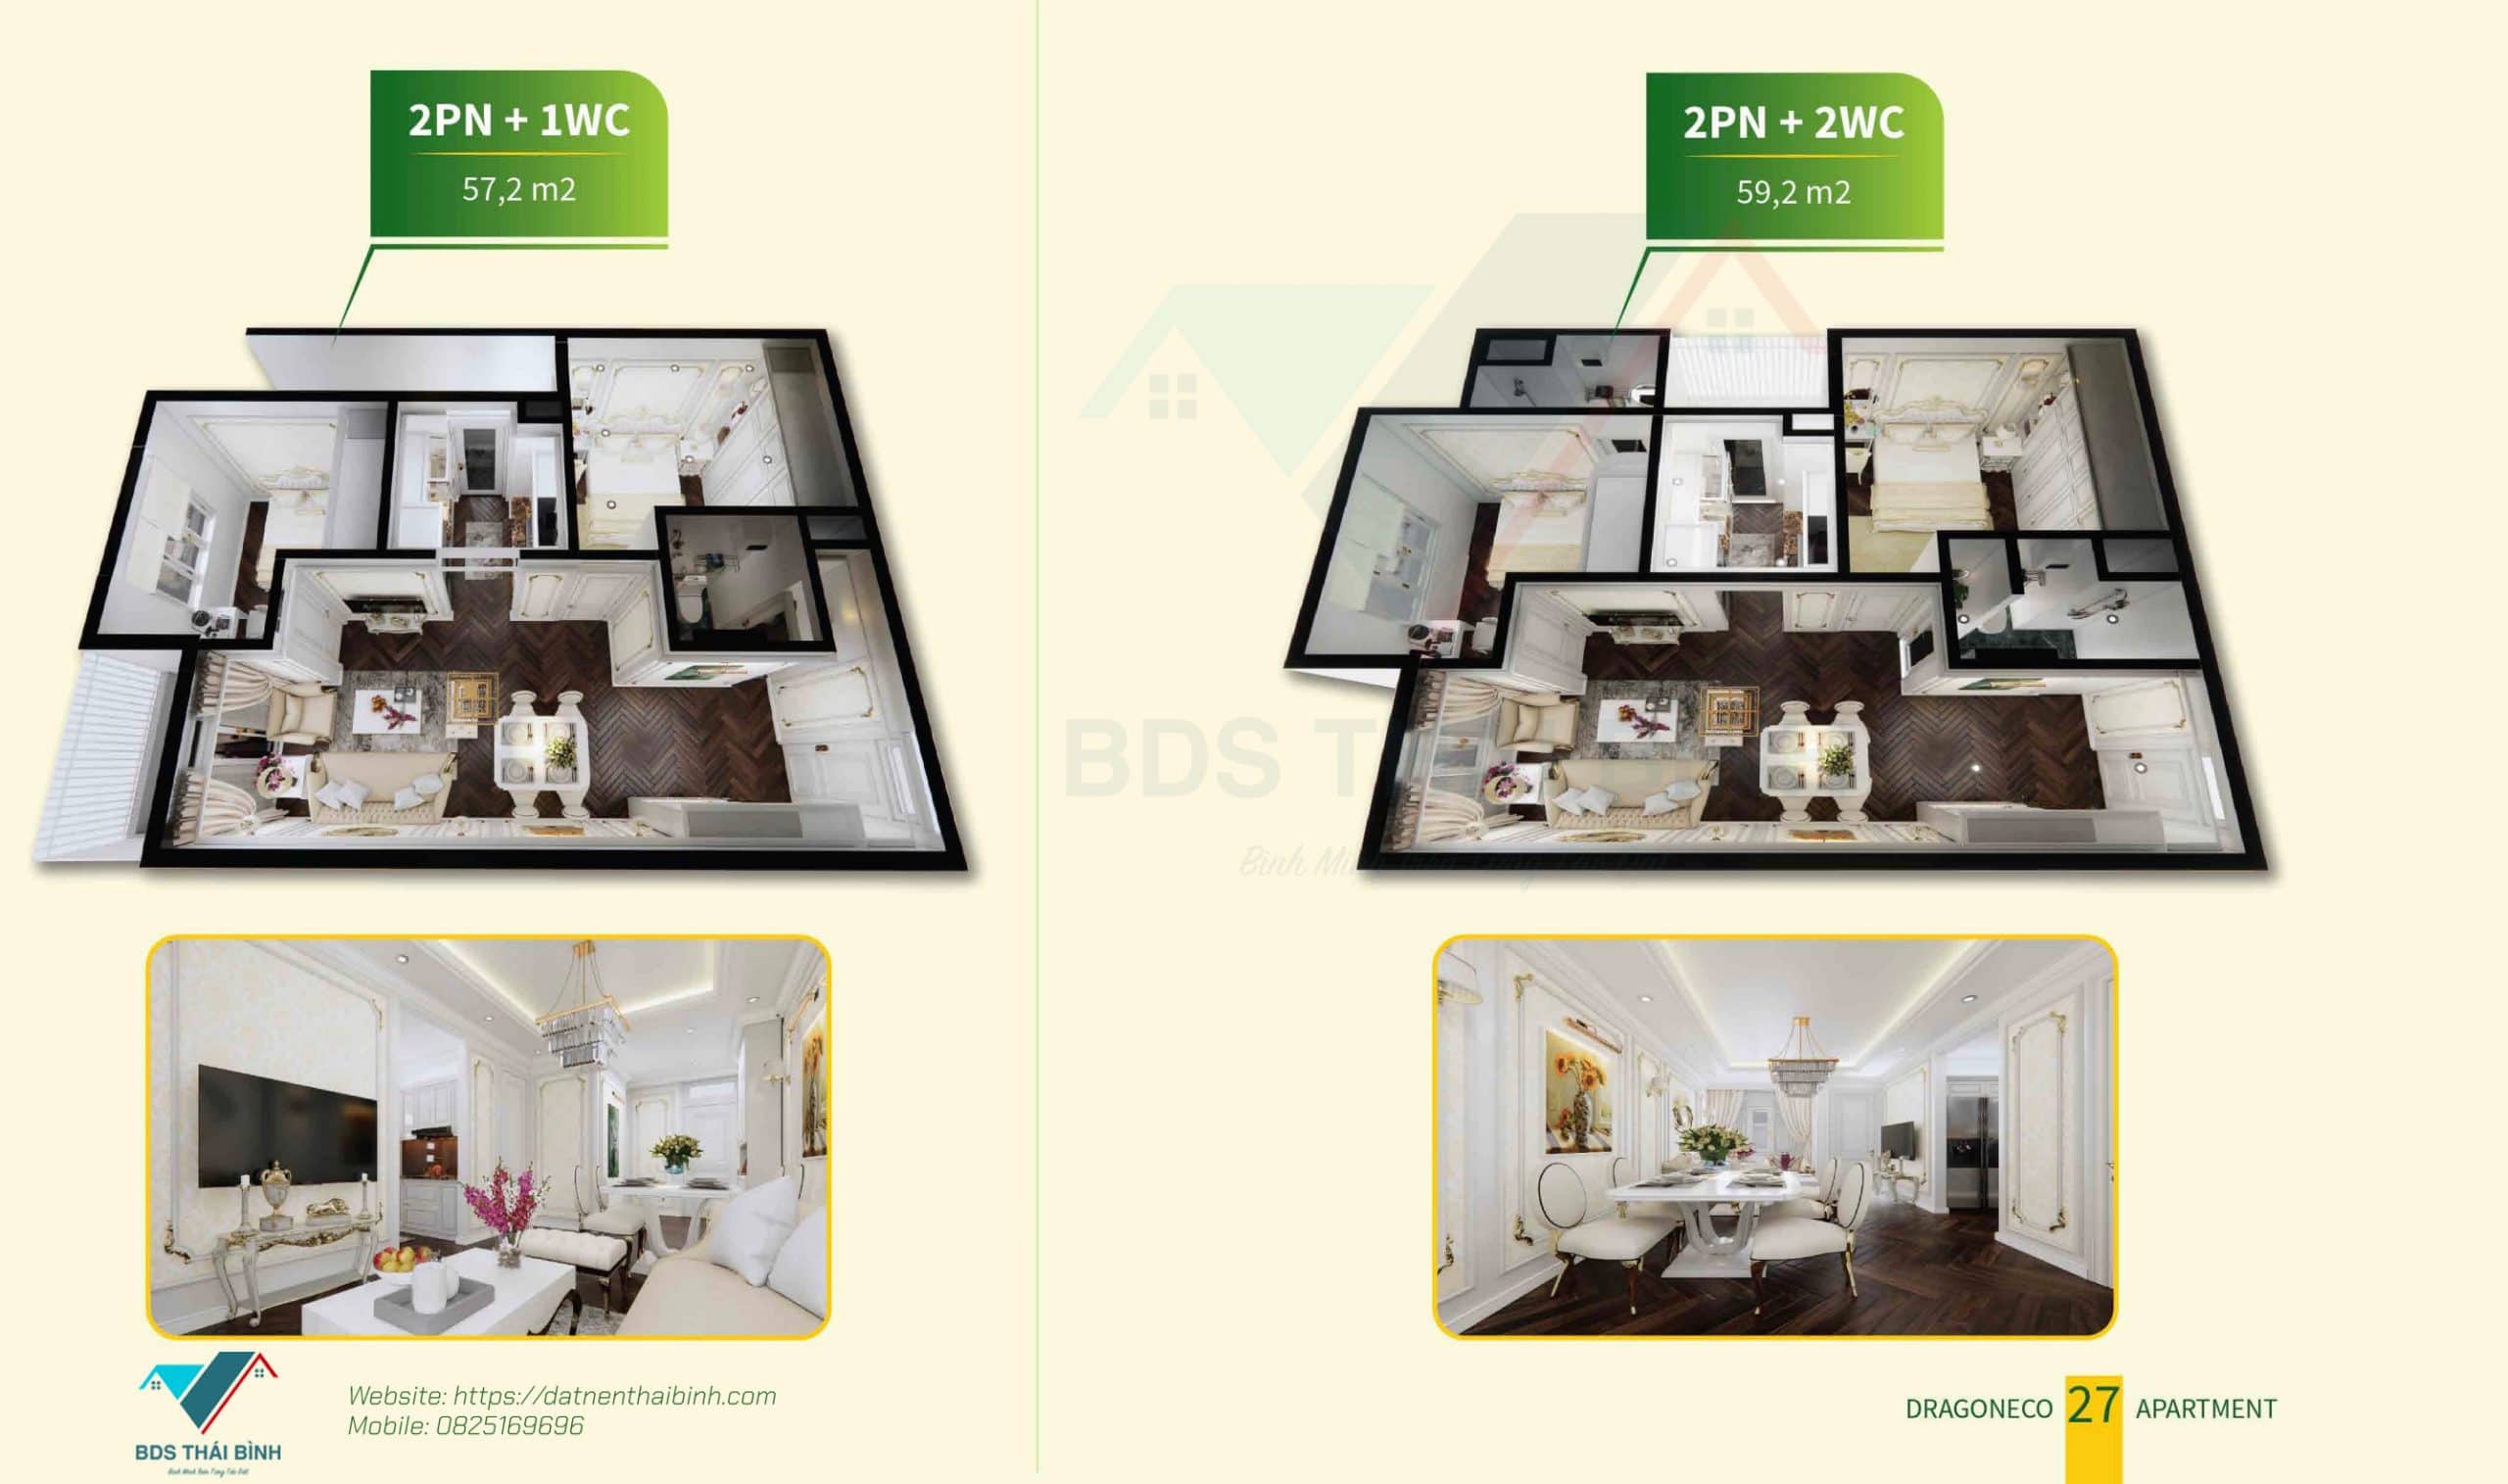 Phối cảnh căn hộ 2 phòng ngủ tại Thái Bình DragonEco Apartment